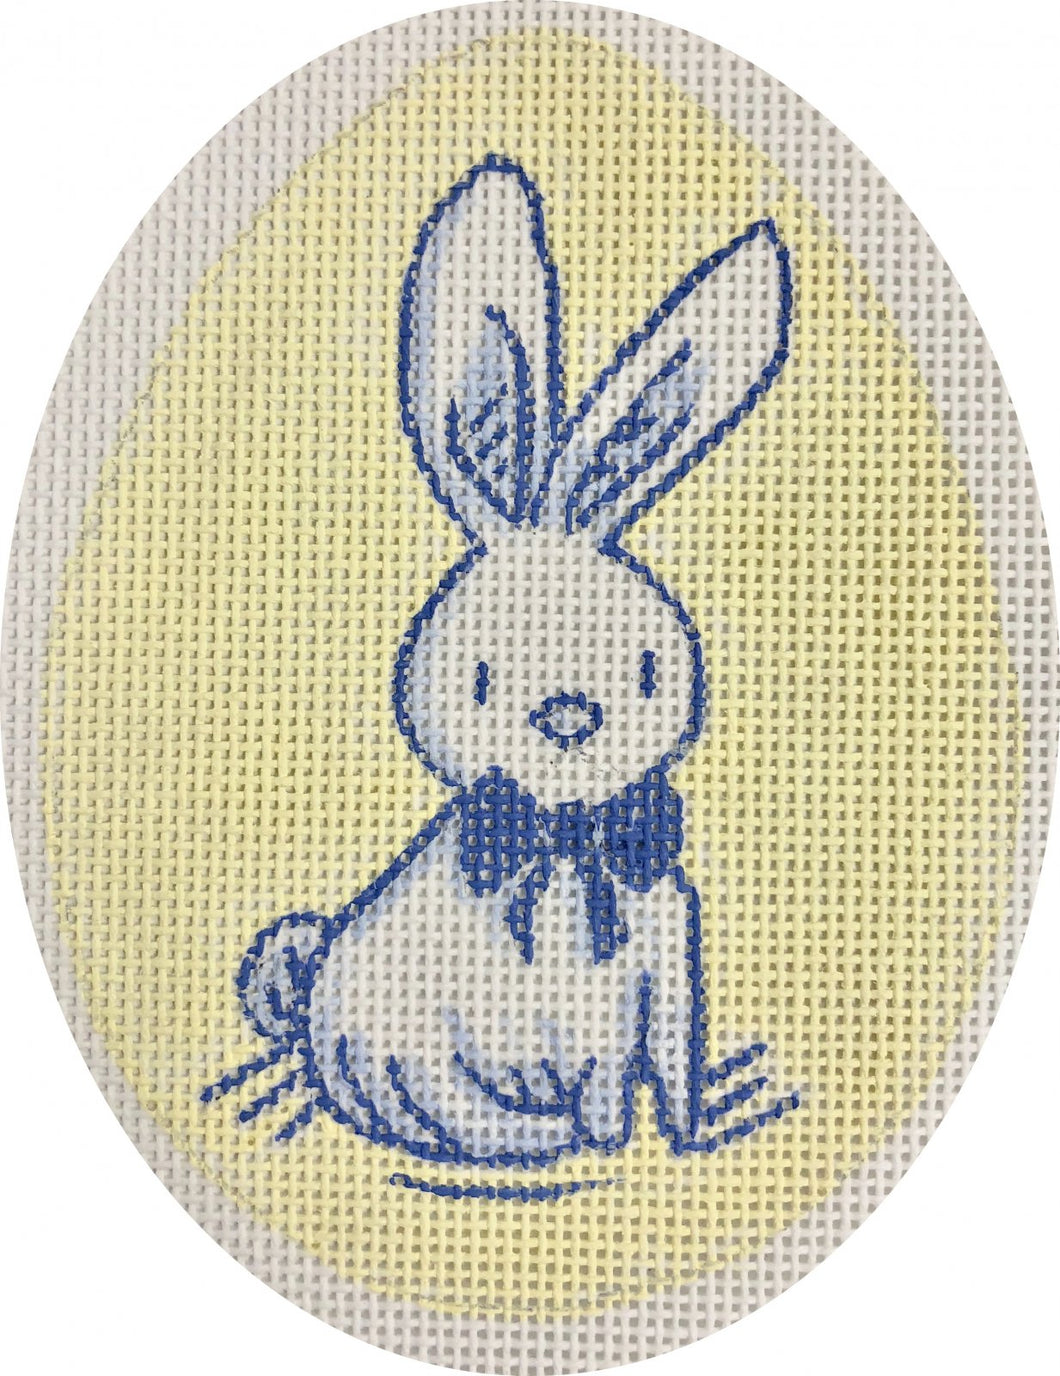 APEA08 rabbit, yellow